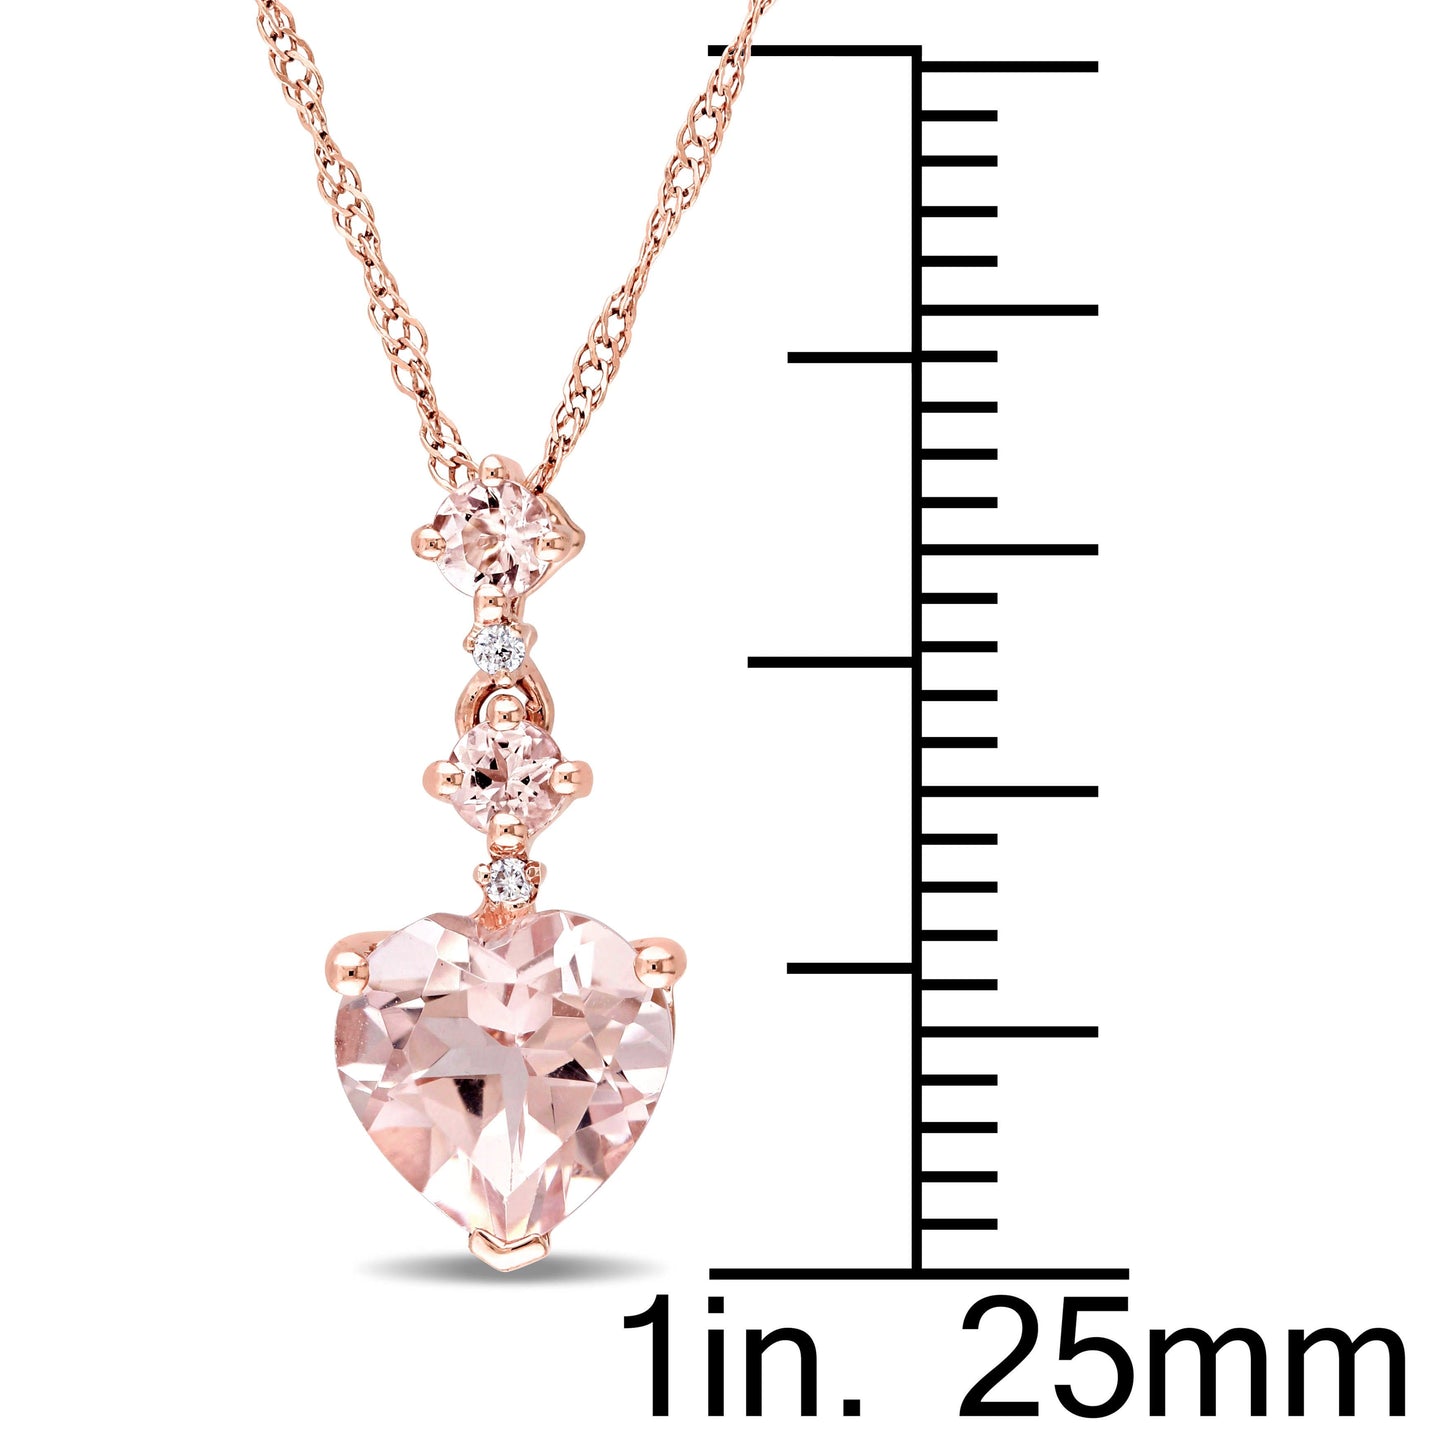 Sophia B Heart Morganite & Diamond Tiered Necklace in 14k Rose Gold